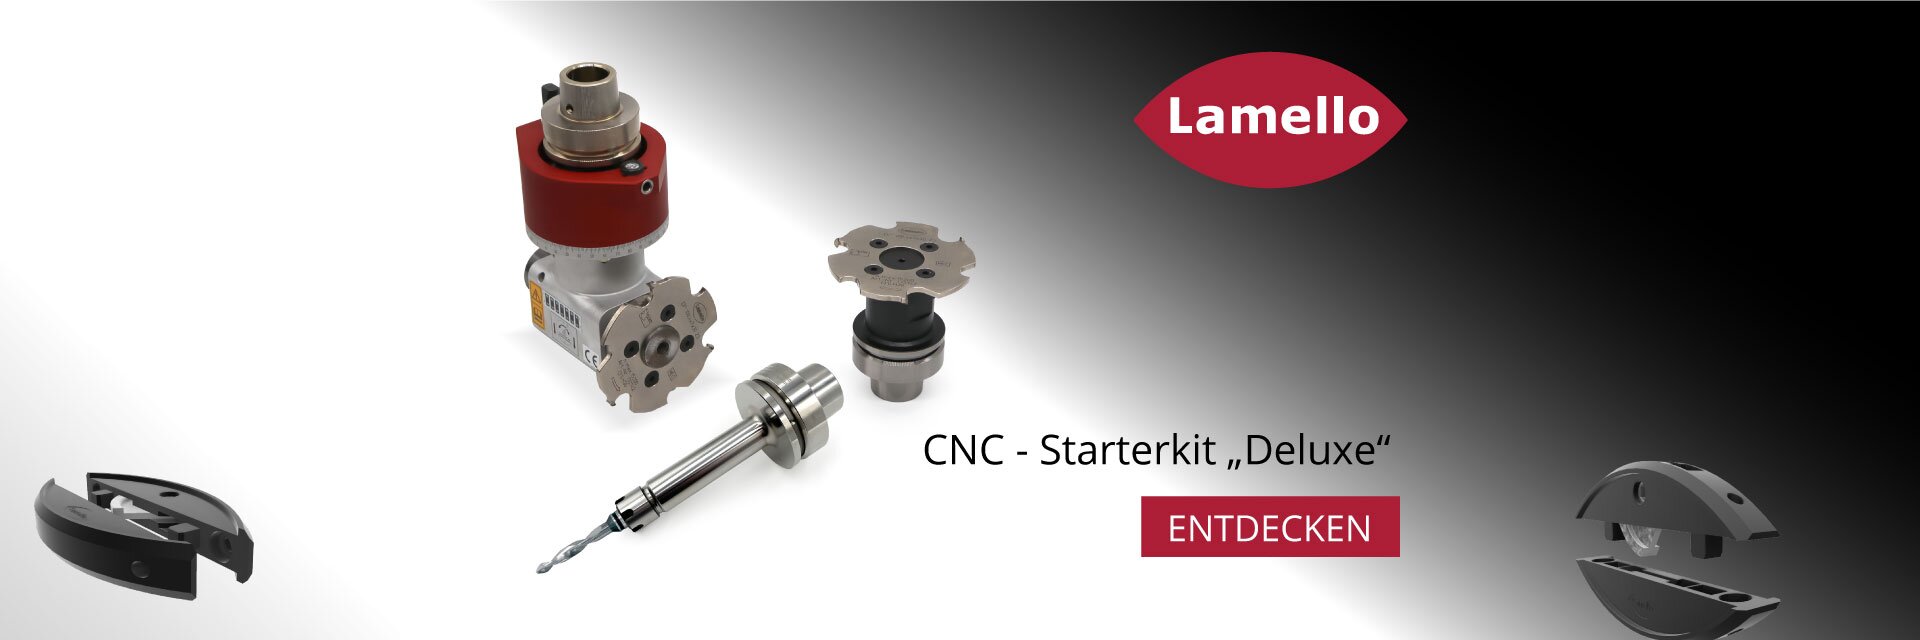 Lamello CNC-Starterkit "Deluxe"